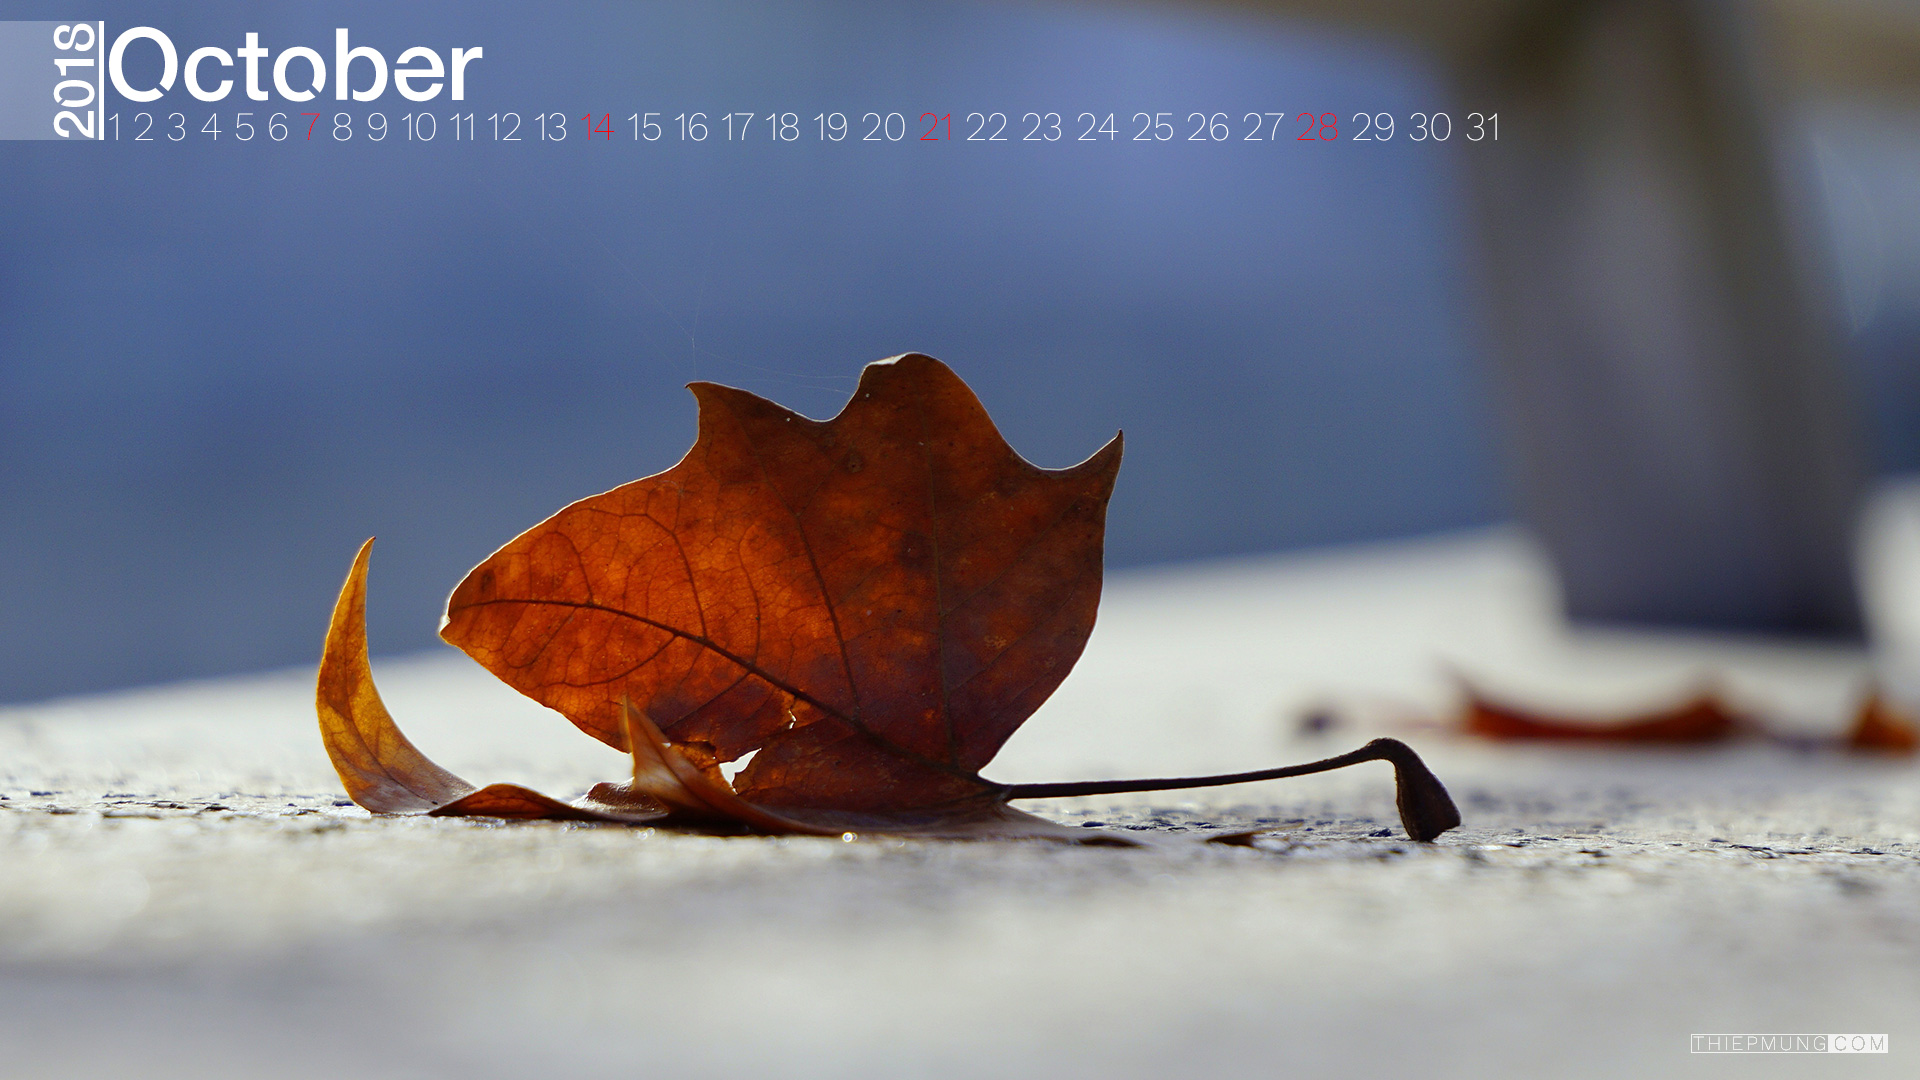 Hình nền desktop tháng 10 - Hình 12